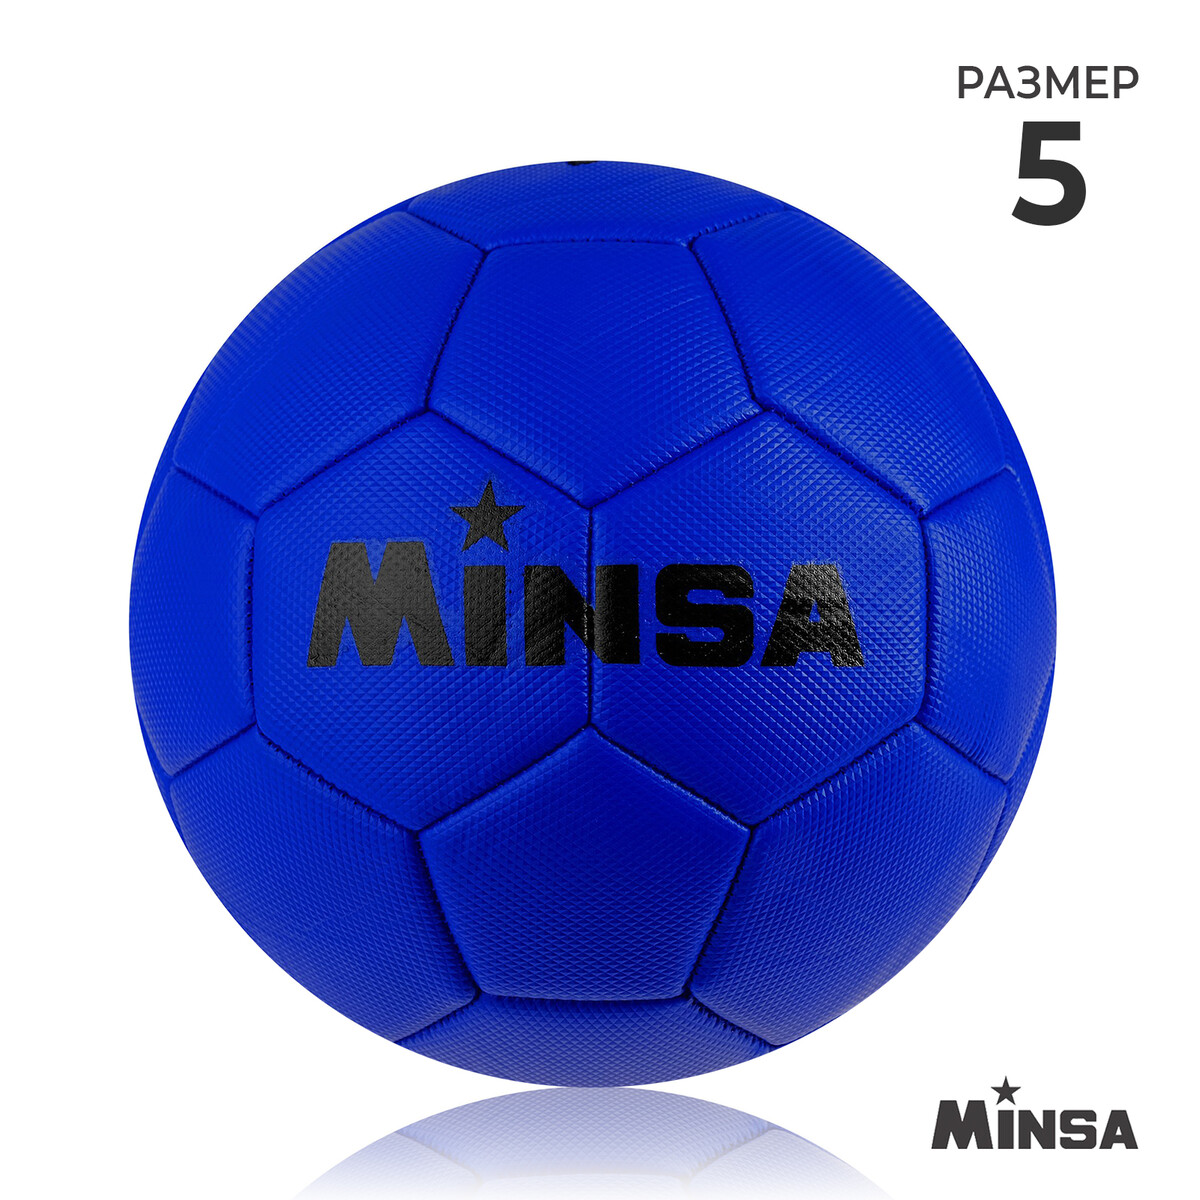 Мяч футбольный minsa, пвх, машинная сшивка, 32 панели, р. 5 мяч футбольный minsa match tpu ручная сшивка 32 панели р 5